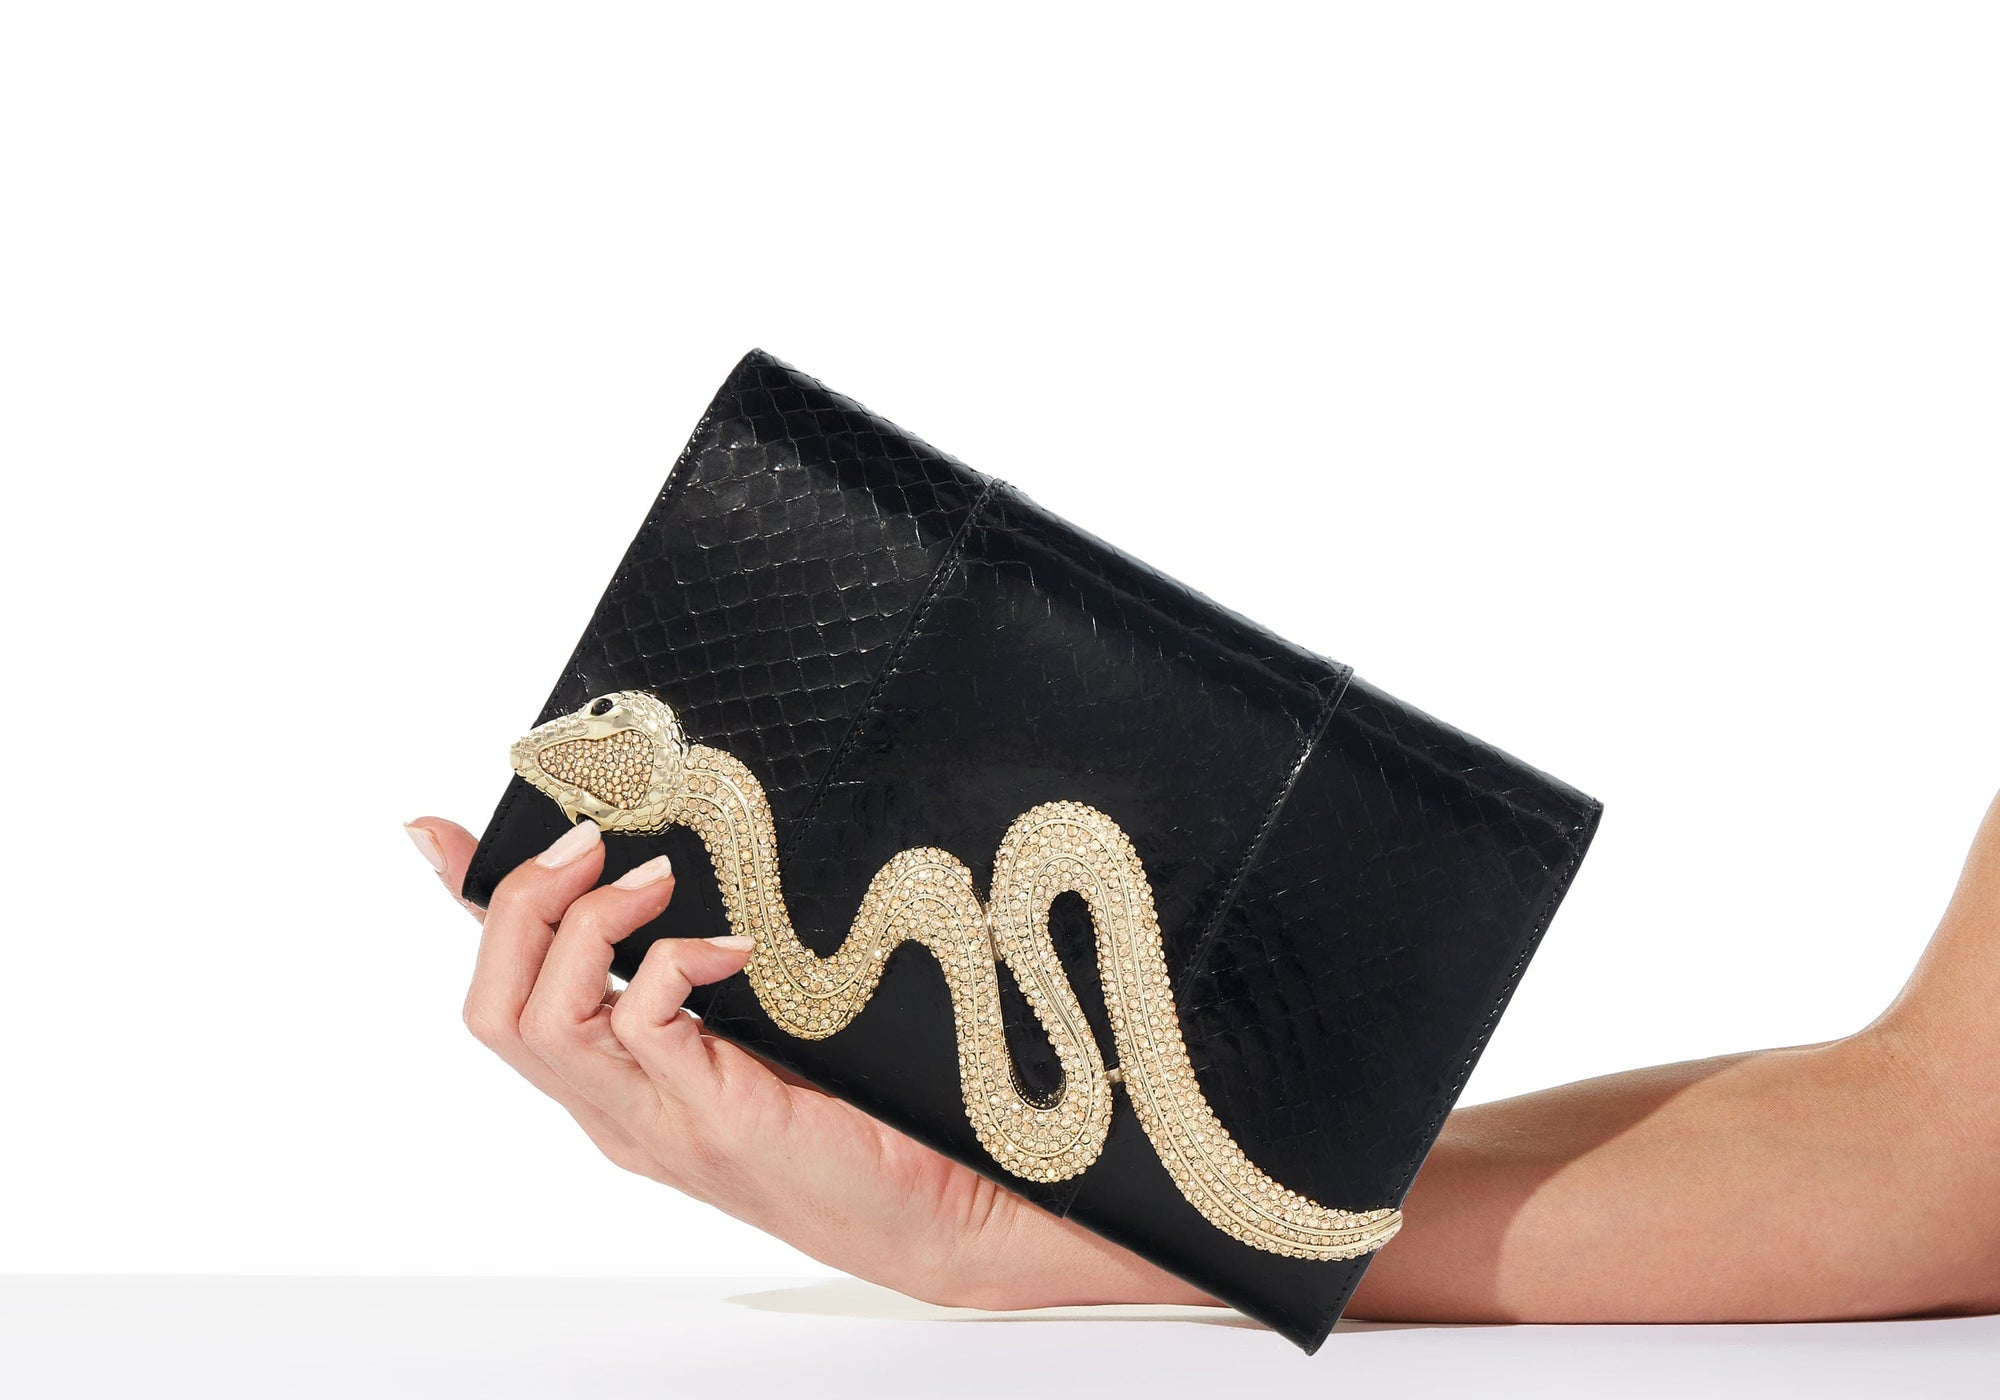 Diane Clutch Bag in Lumière leather